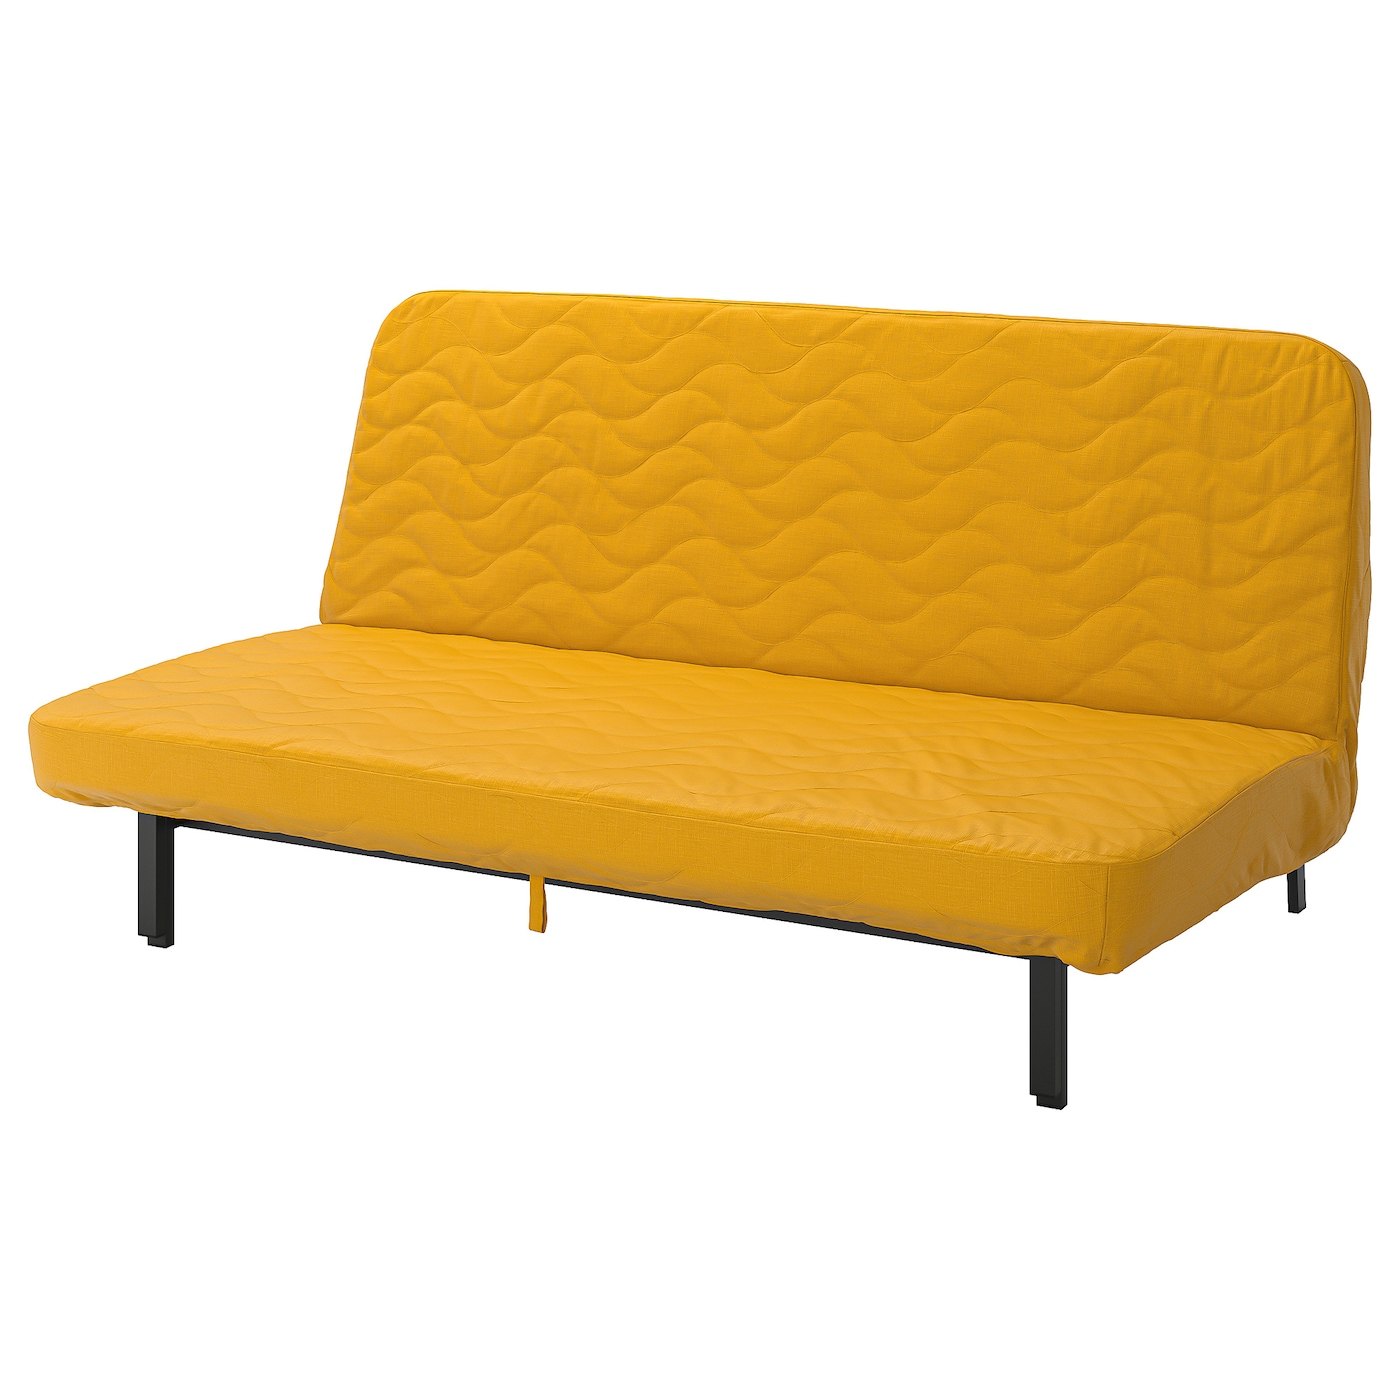 NYHAMN - диван-кровать 3-х местная с ортопедическим вставки пены, skiftebo желтый